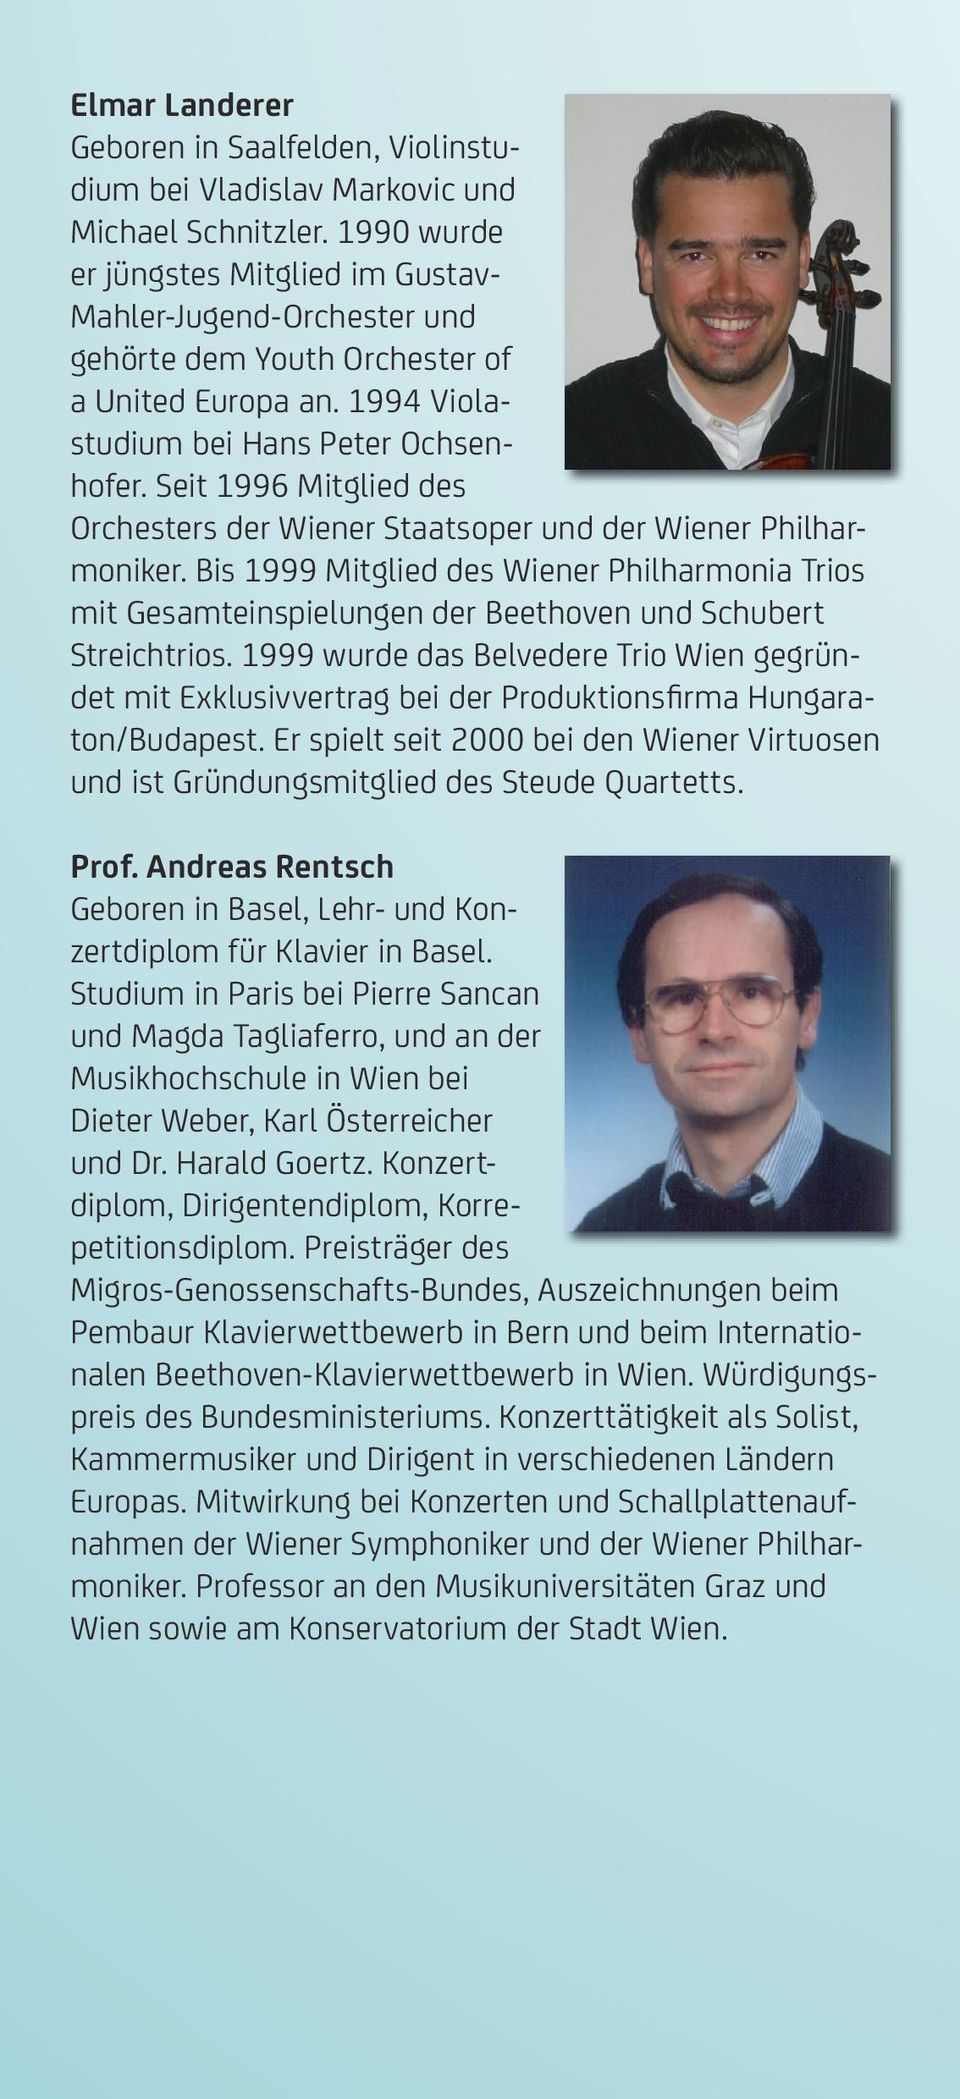 Seit 1996 Mitglied des Orchesters der Wiener Staatsoper und der Wiener Philharmoniker. Bis 1999 Mitglied des Wiener Philharmonia Trios mit Gesamteinspielungen der Beethoven und Schubert Streichtrios.